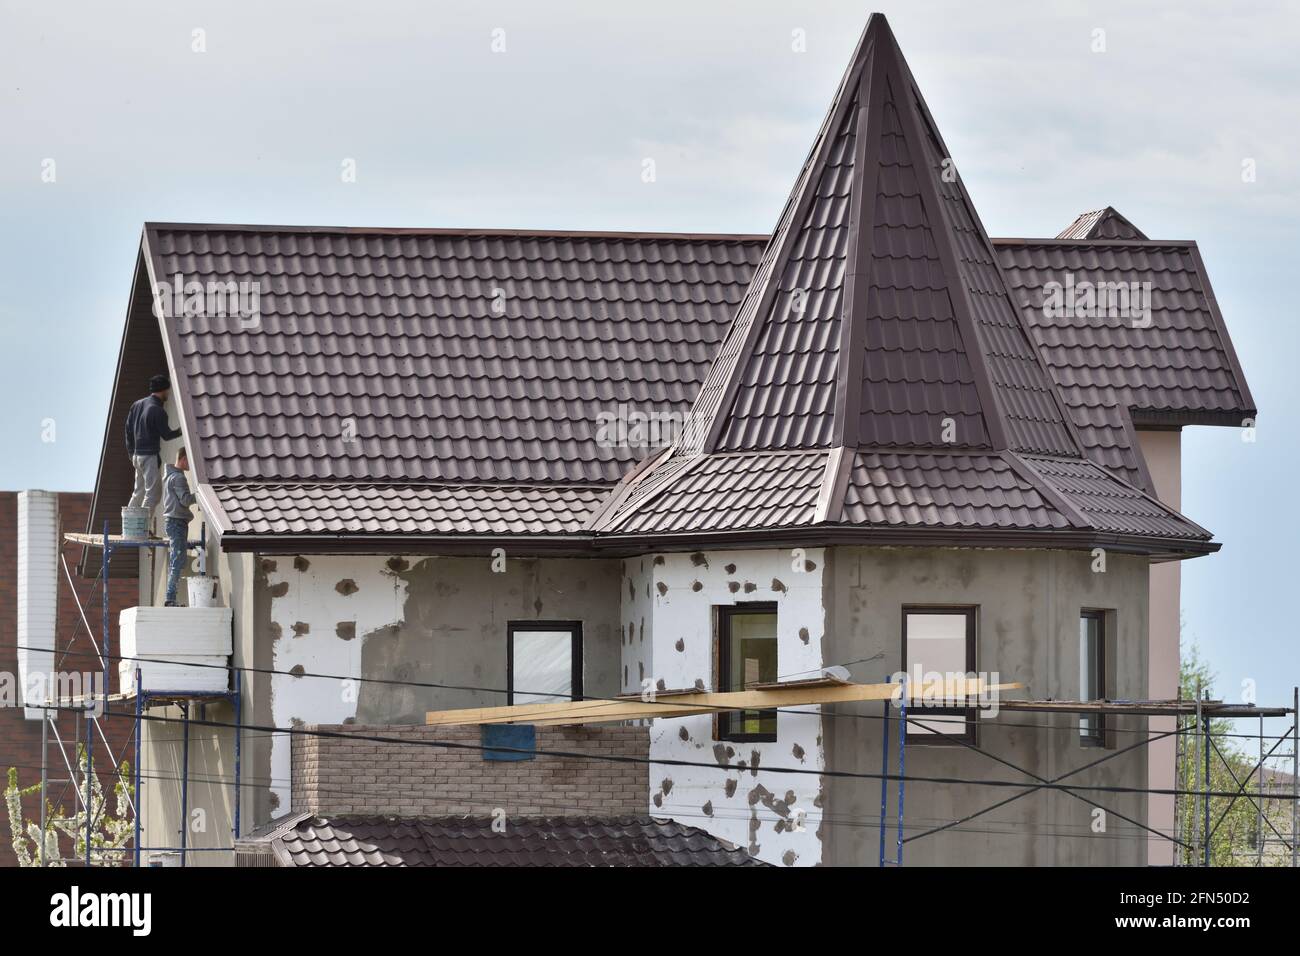 STARIY OSKOL, RUSSIA - 14 MAGGIO 2021: Isolamento esterno delle pareti della casa con polistirene espanso bianco Foto Stock